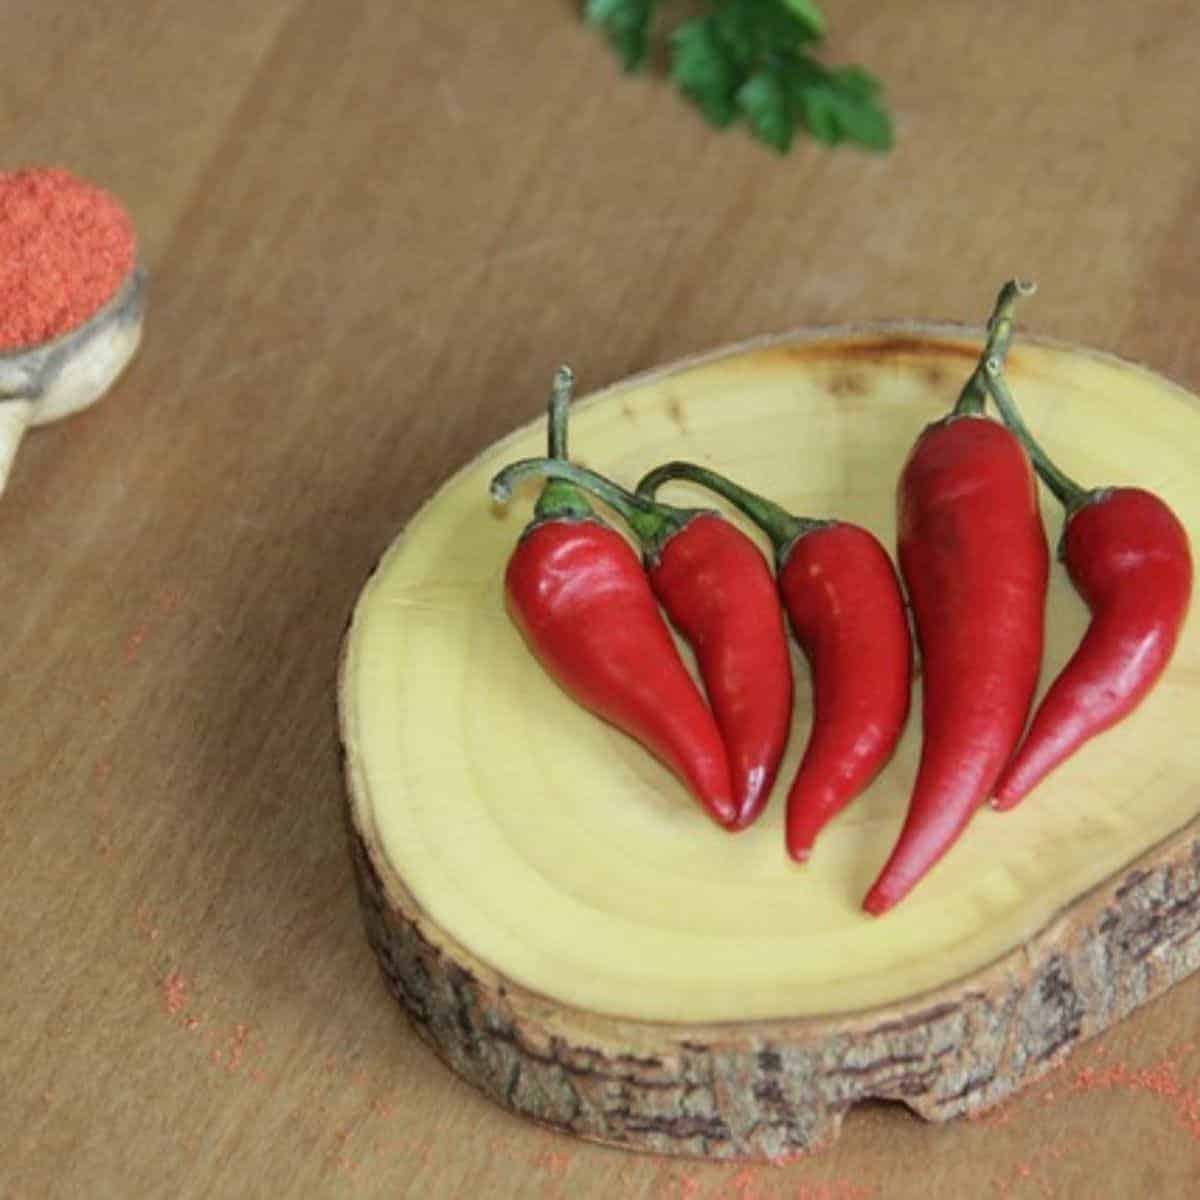 Red pepper and reddish powder for peri peri seasoning